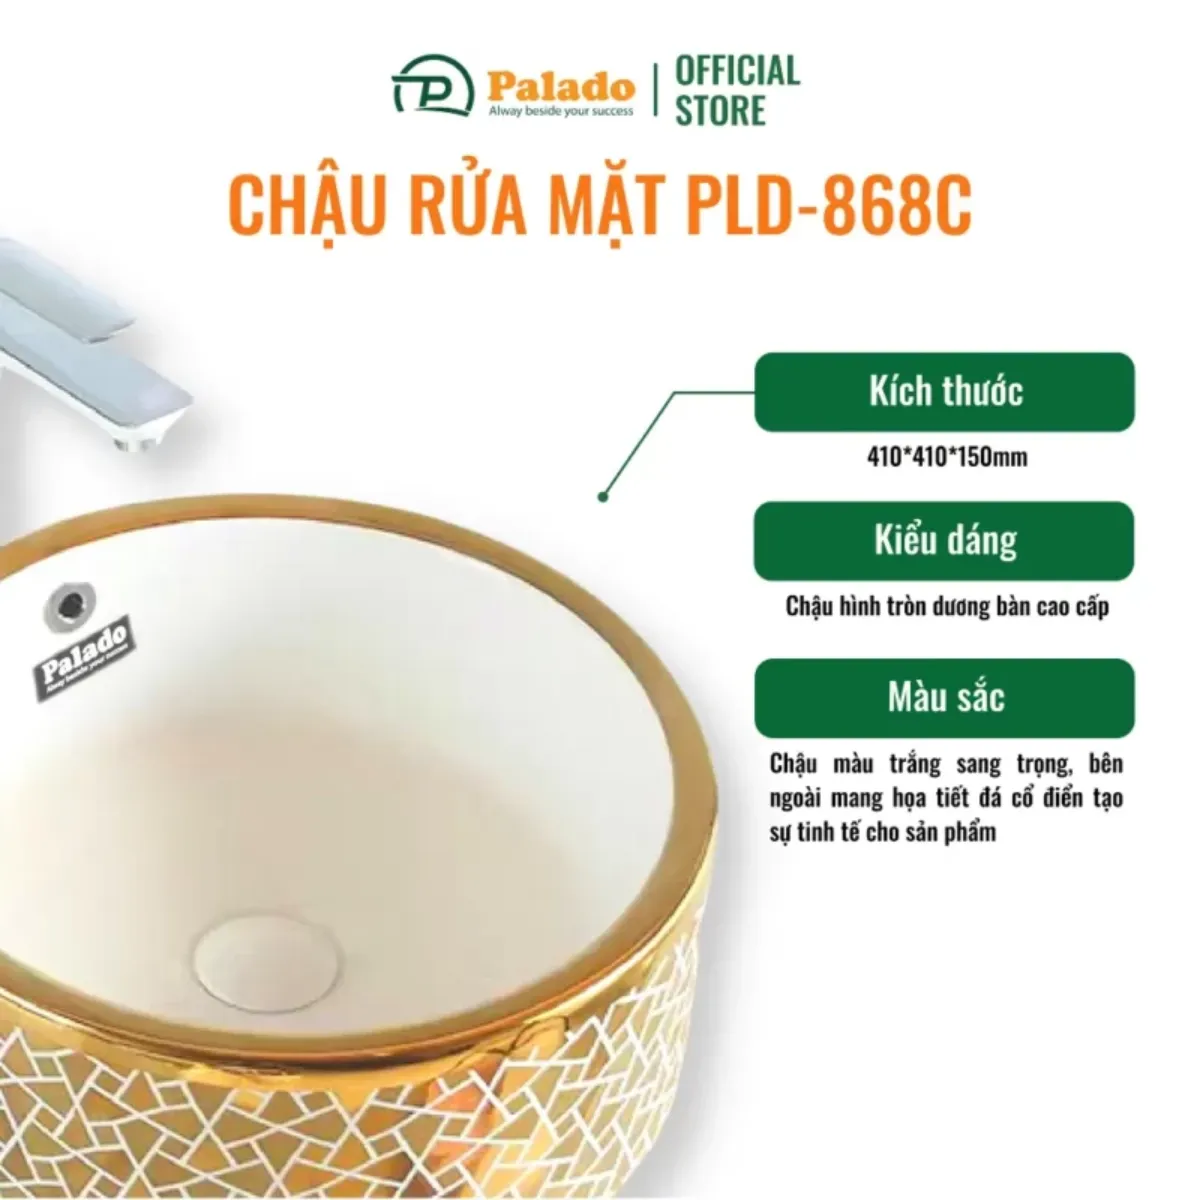 Thông số kỹ thuật cơ bản về bộ chậu rửa lavabo dương bàn Palado PLD868C